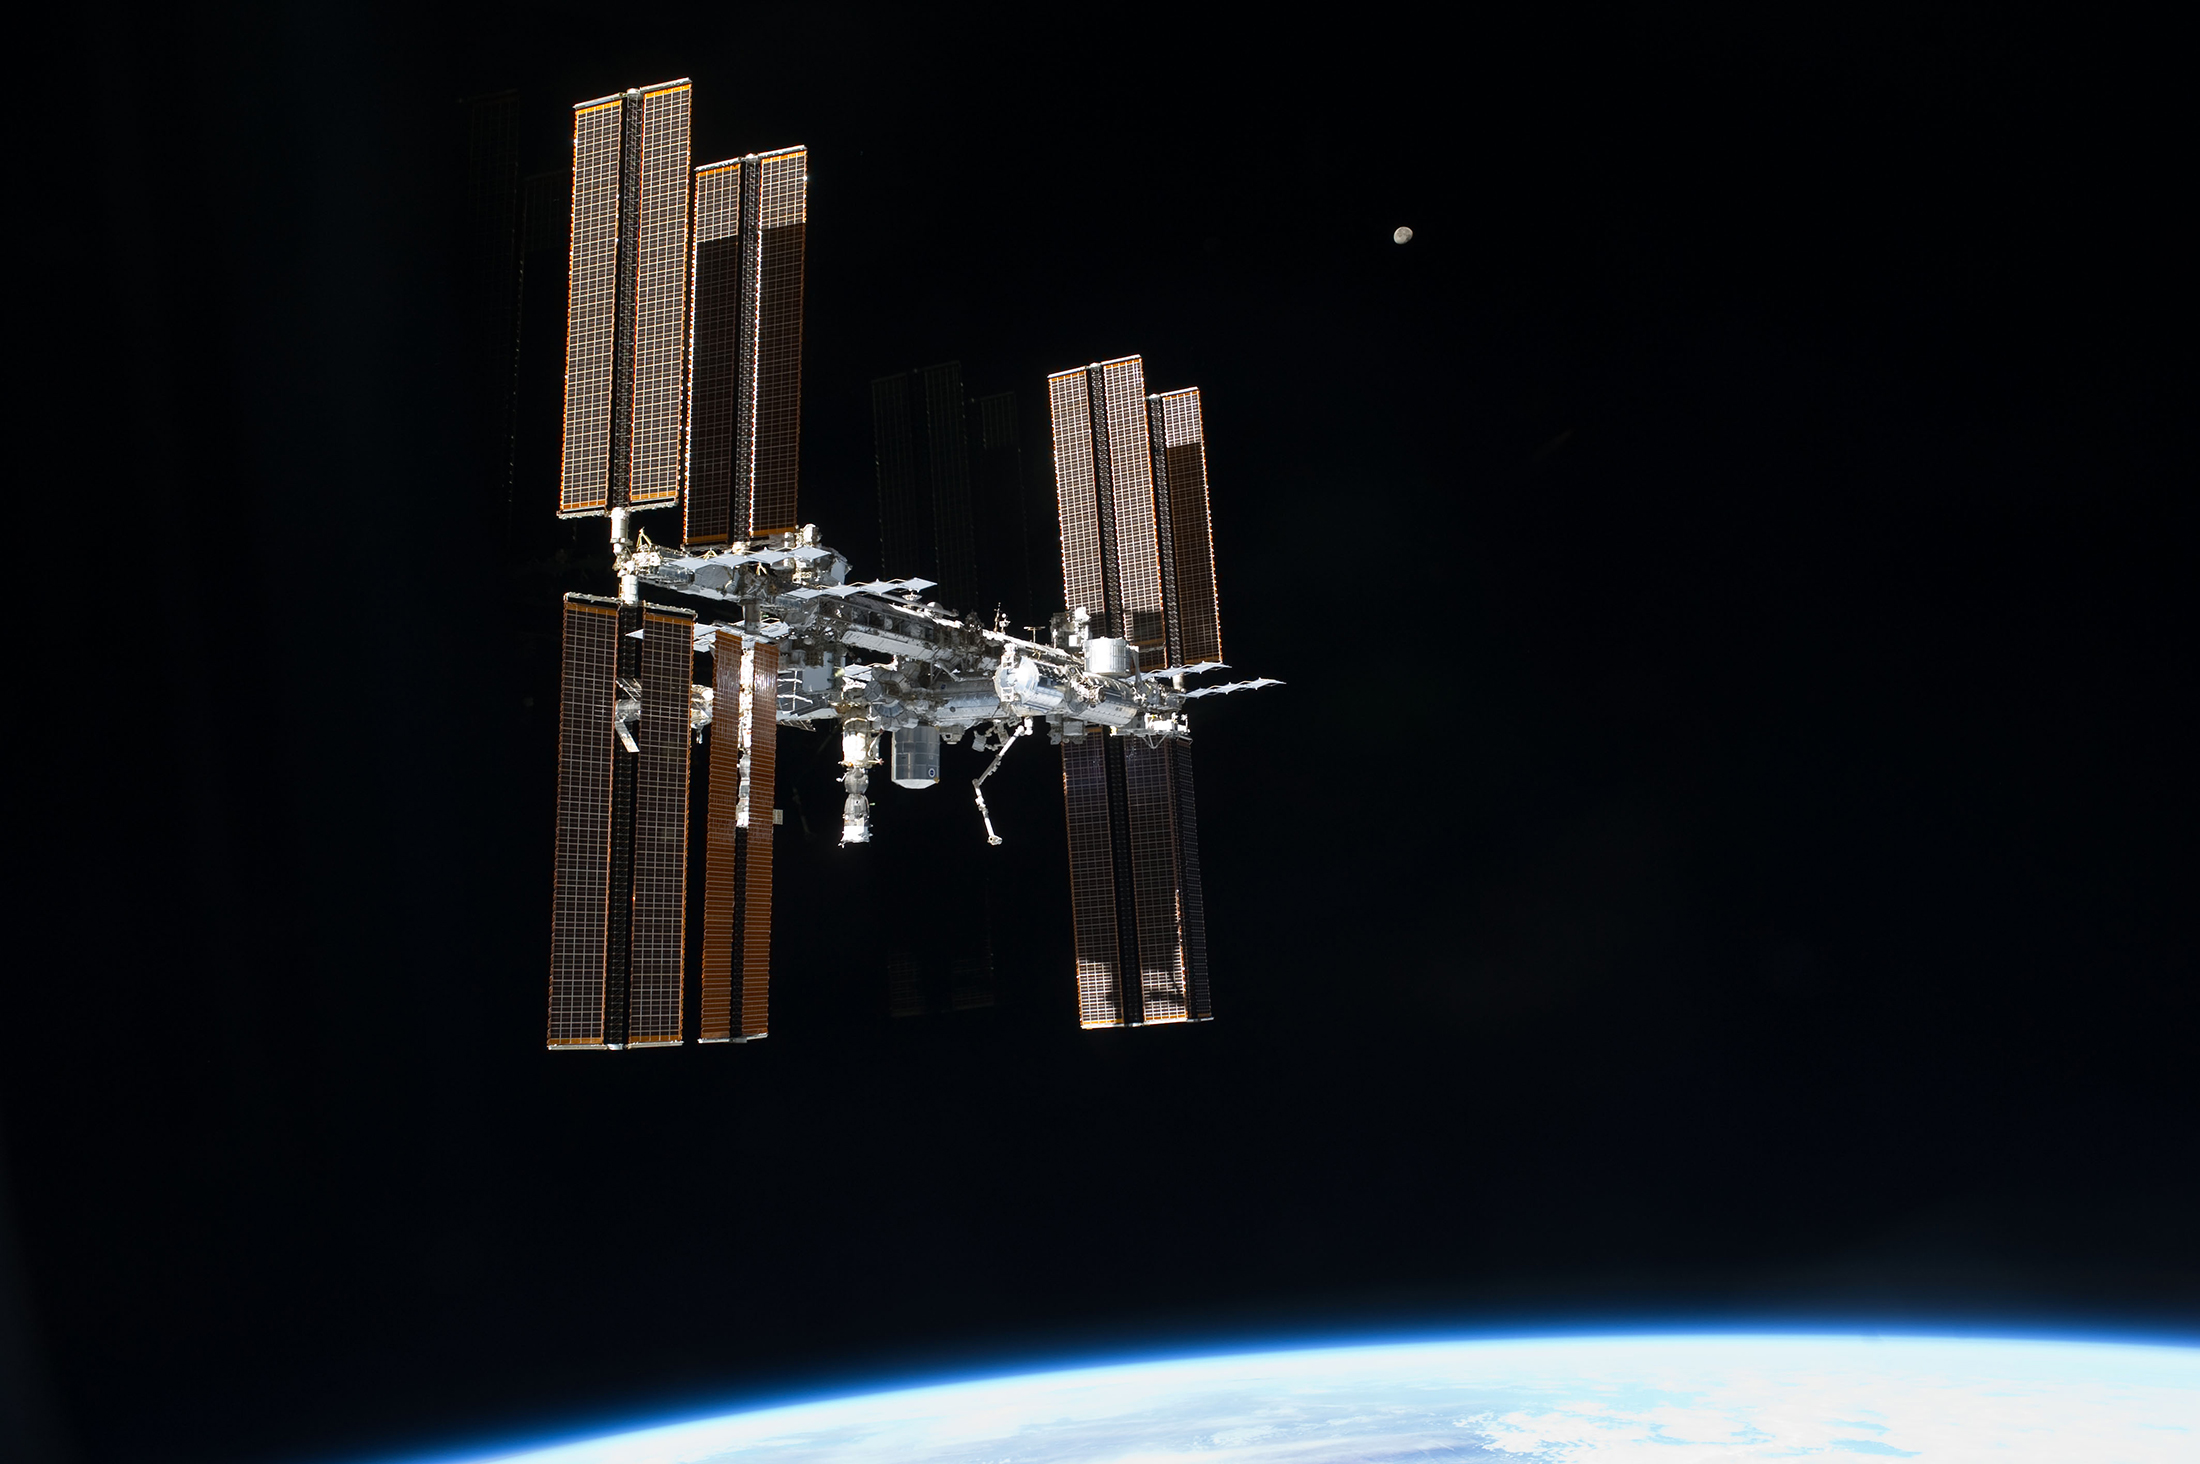 La Station spatiale internationale photographiée en juillet 2011 depuis la navette spatiale lors de sa dernière mission (STS-135).&nbsp;© Nasa